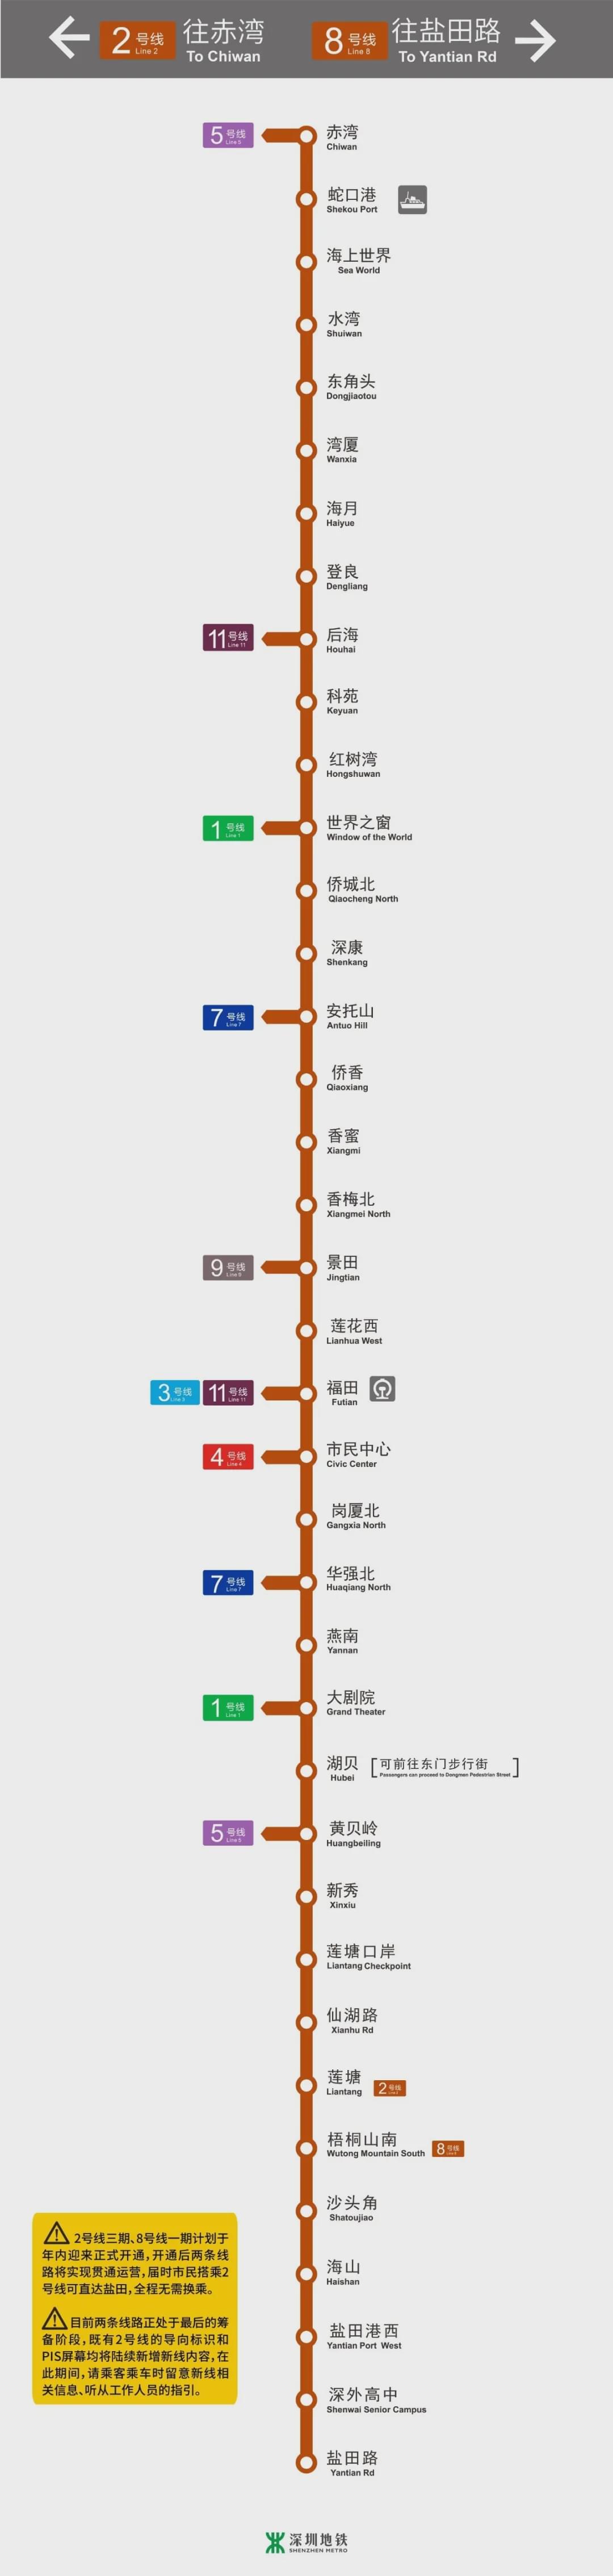 官宣深圳地铁2号线8号线无需下车换乘